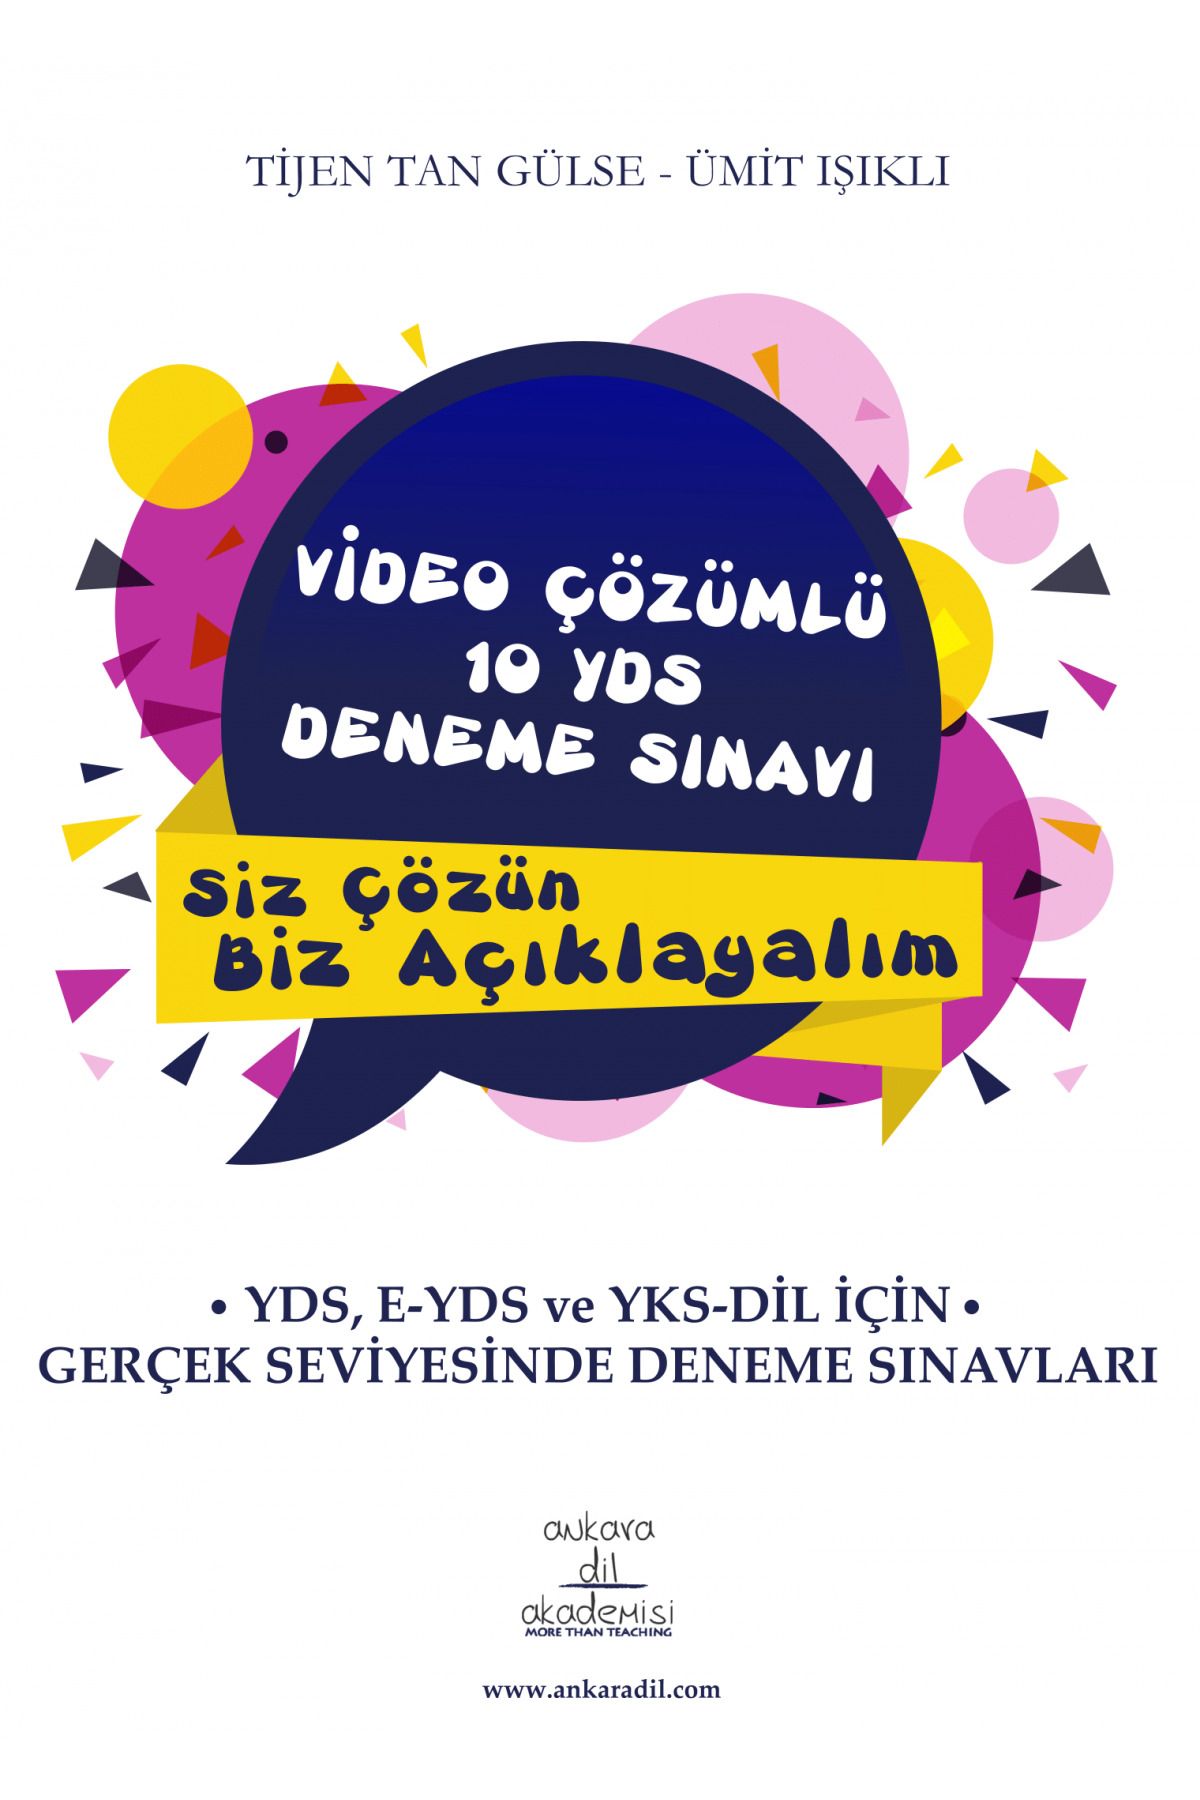 Ankara Dil Akademisi Video Çözümlü 10 Yds Deneme Sınavı